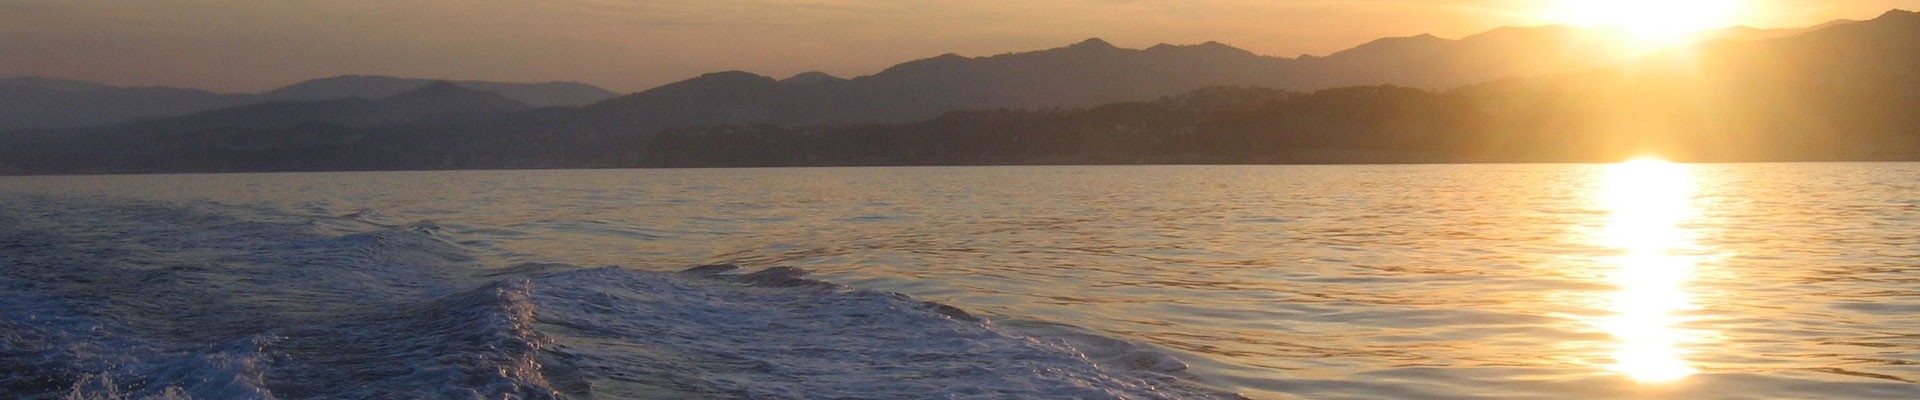 Escursioni e trasporti turistici via mare | Avvistamento cetacei | Giro del Porto di Genova